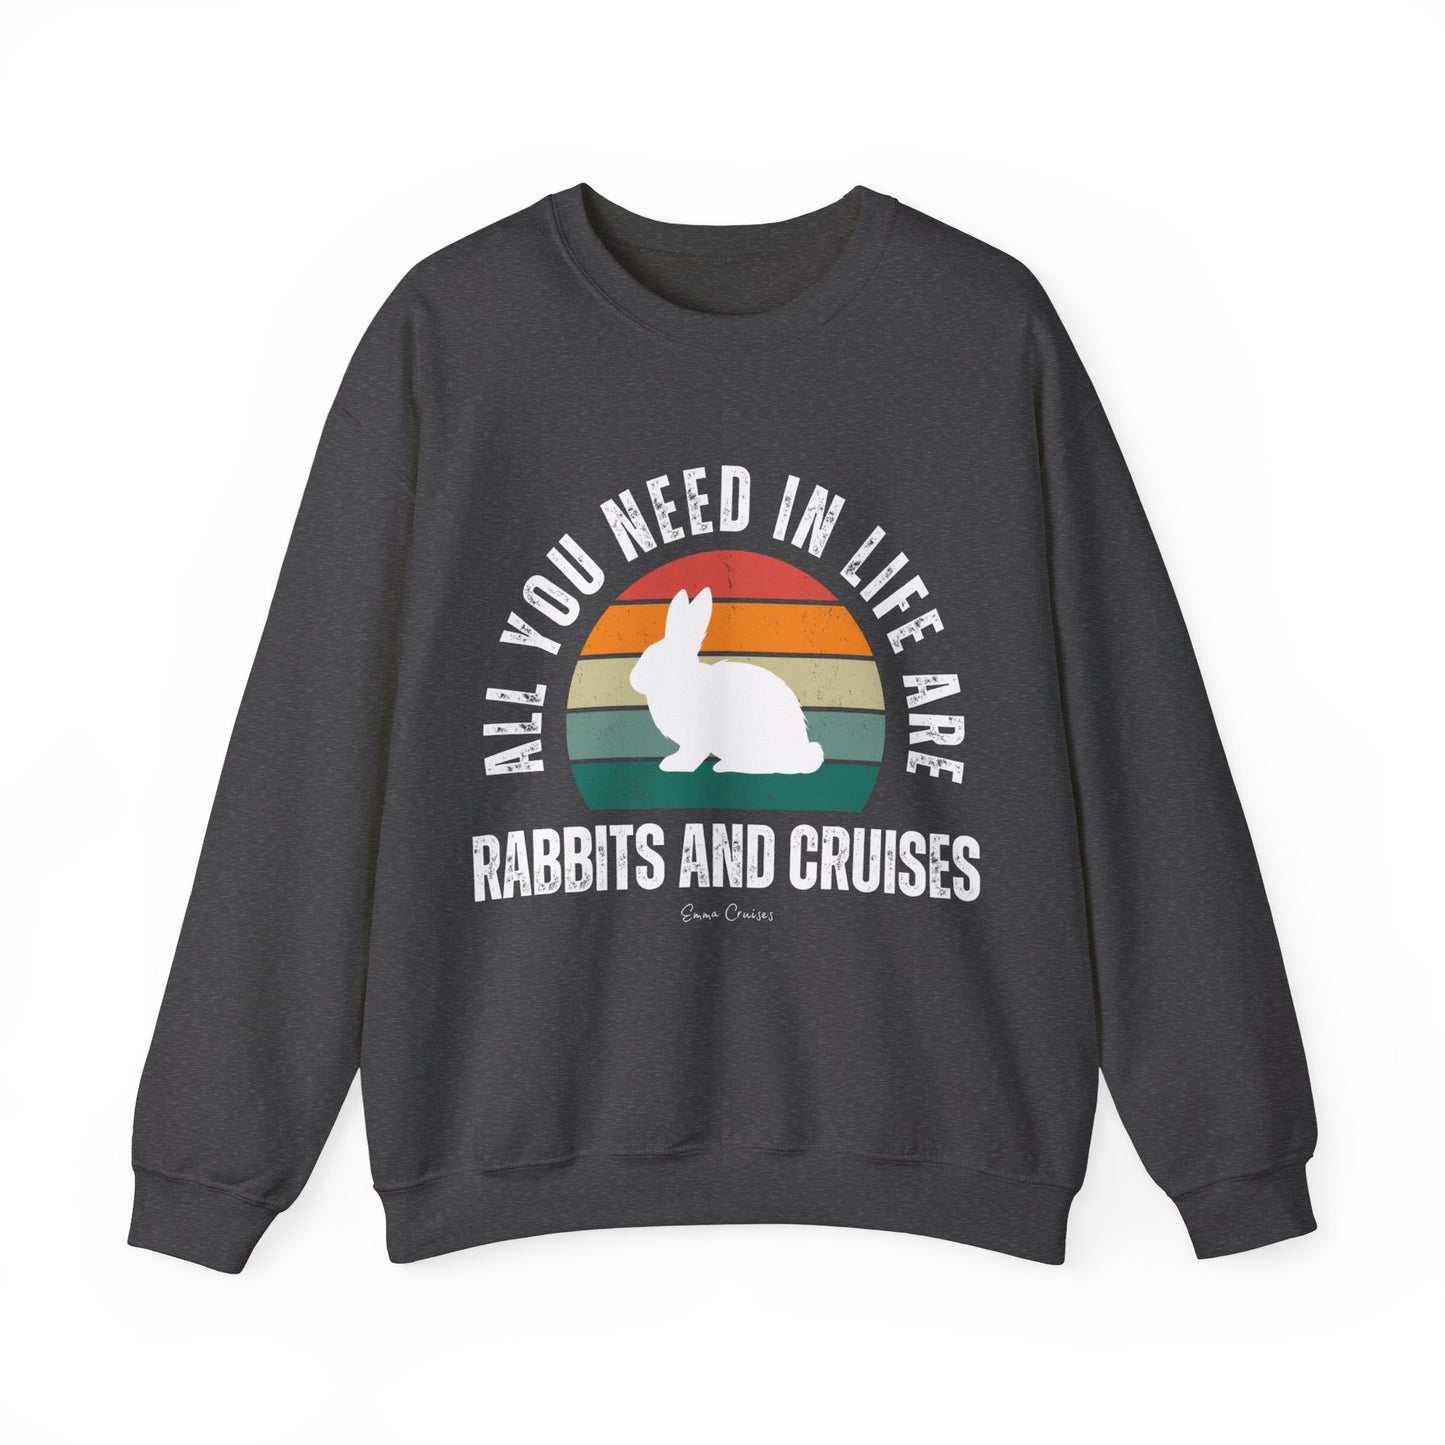 Rabbits and Cruises - UNISEX Crewneck Sweatshirt